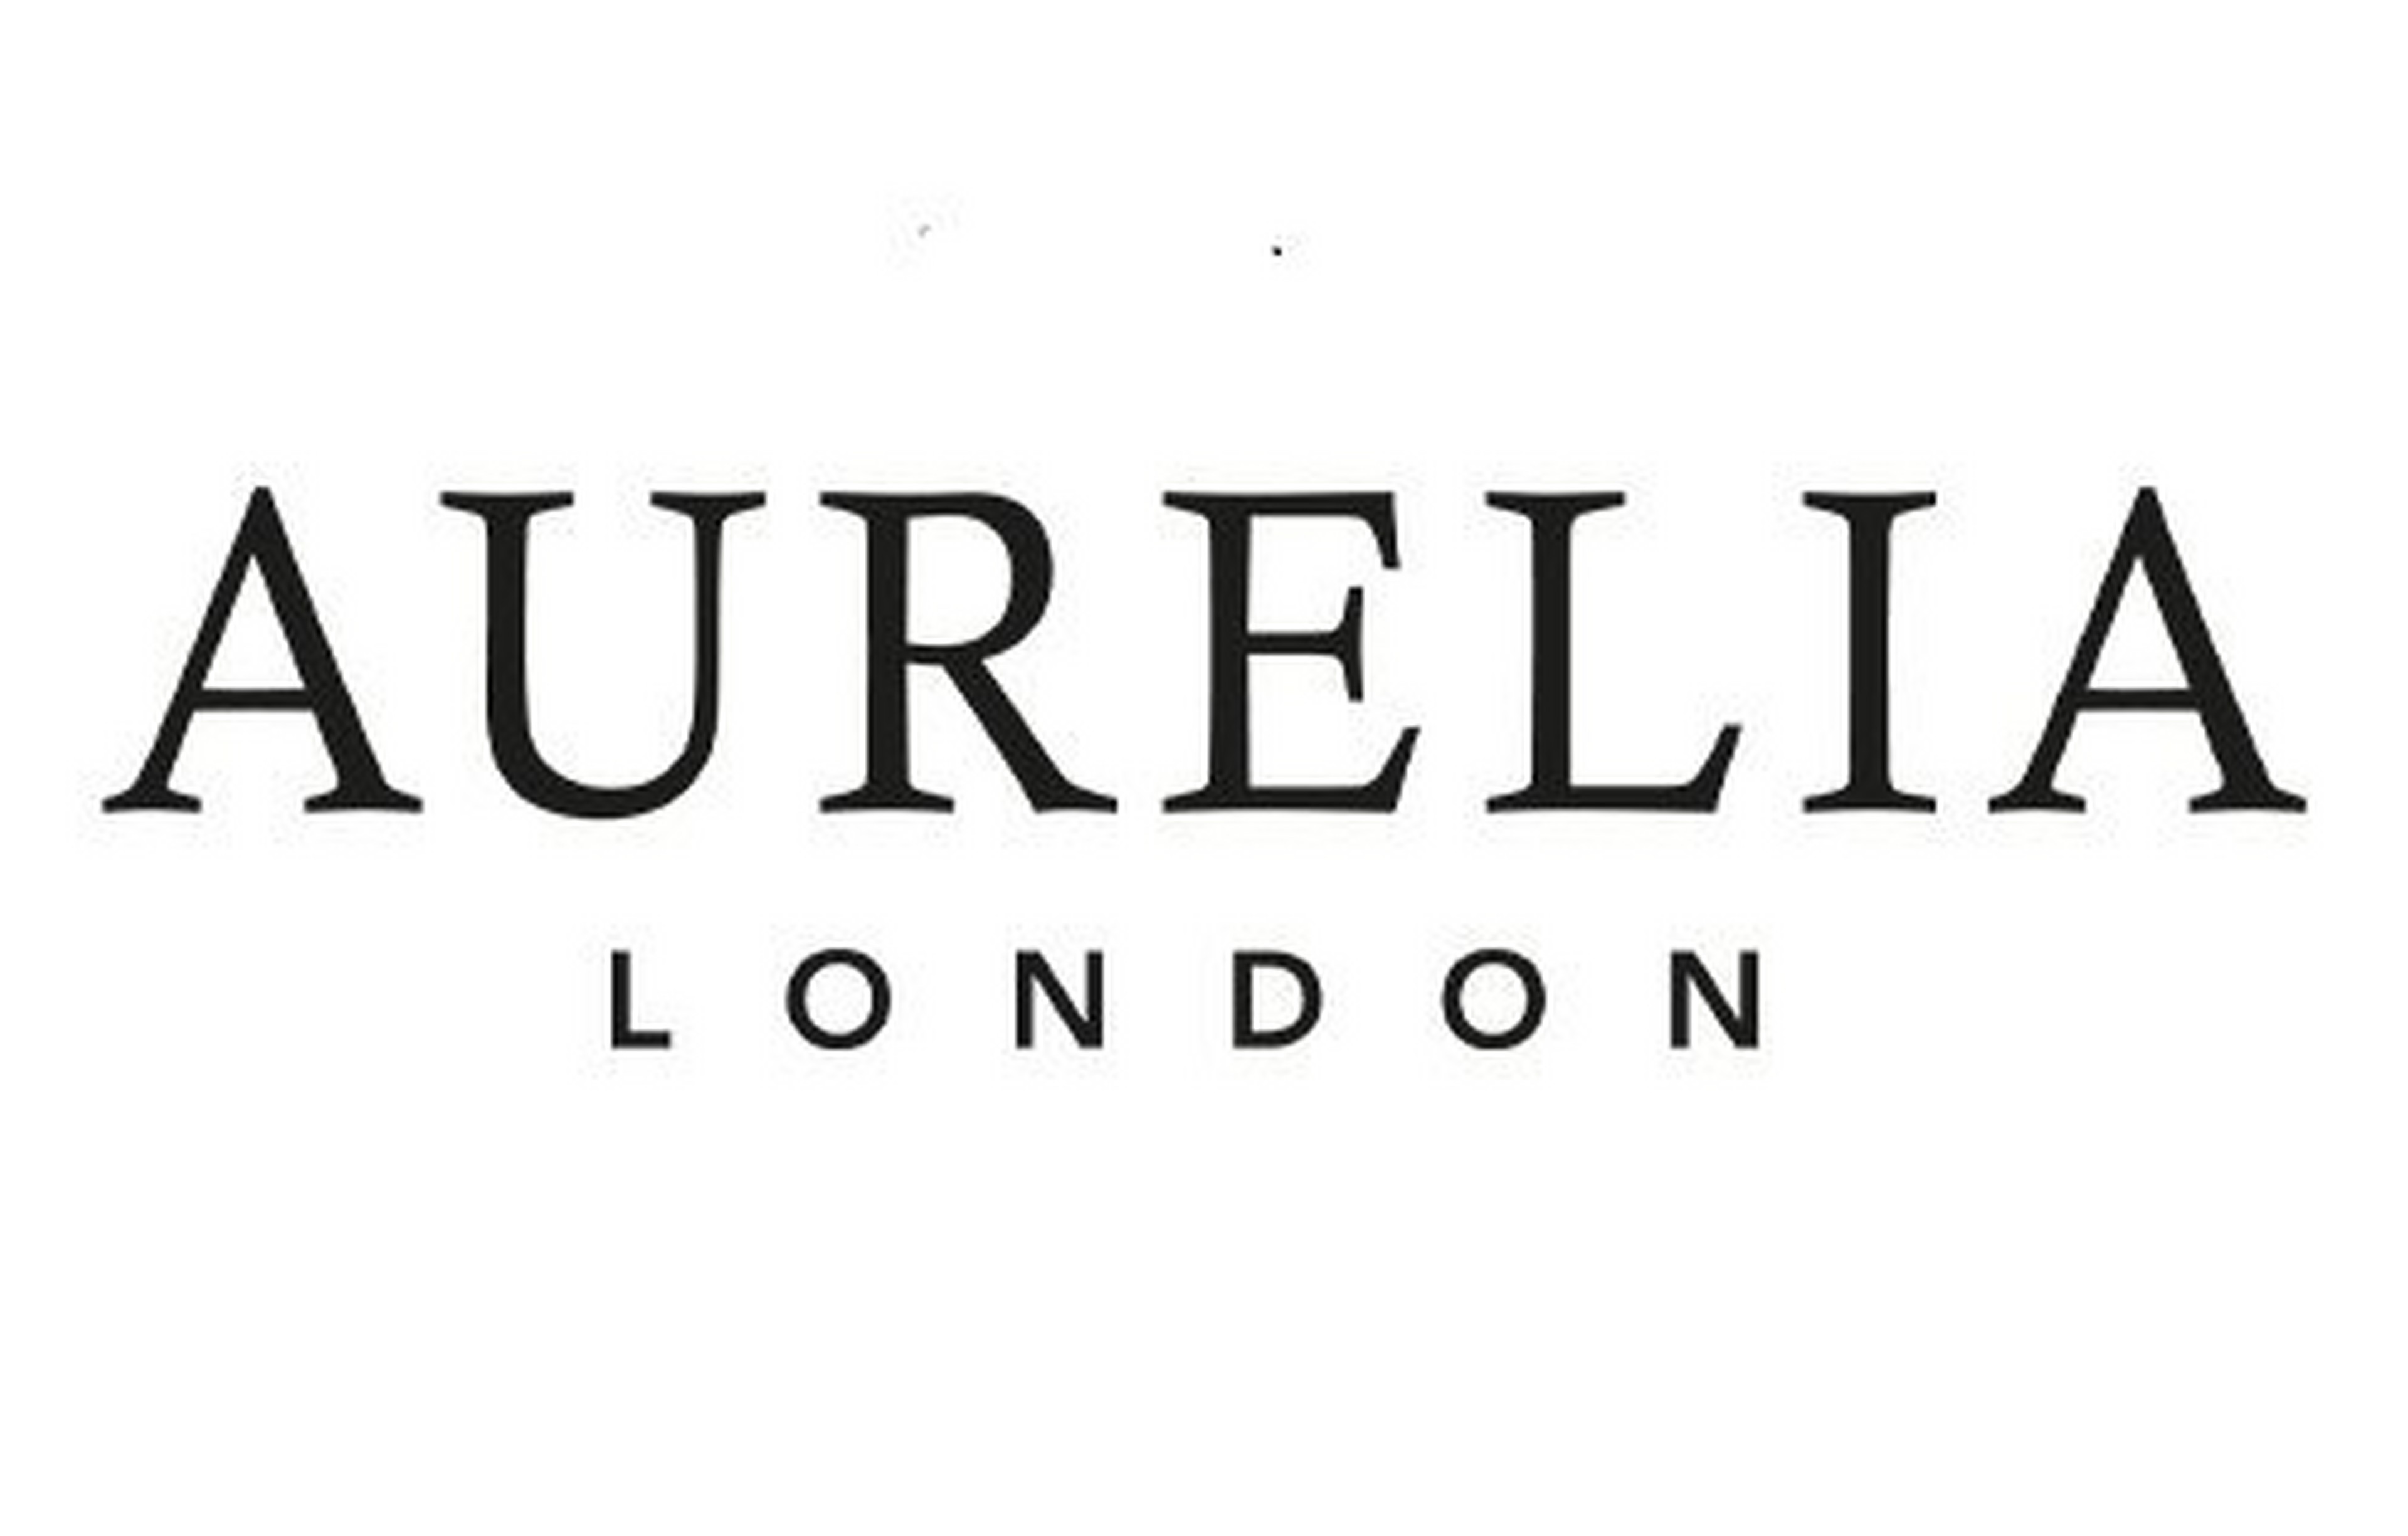 Aurelia logotype